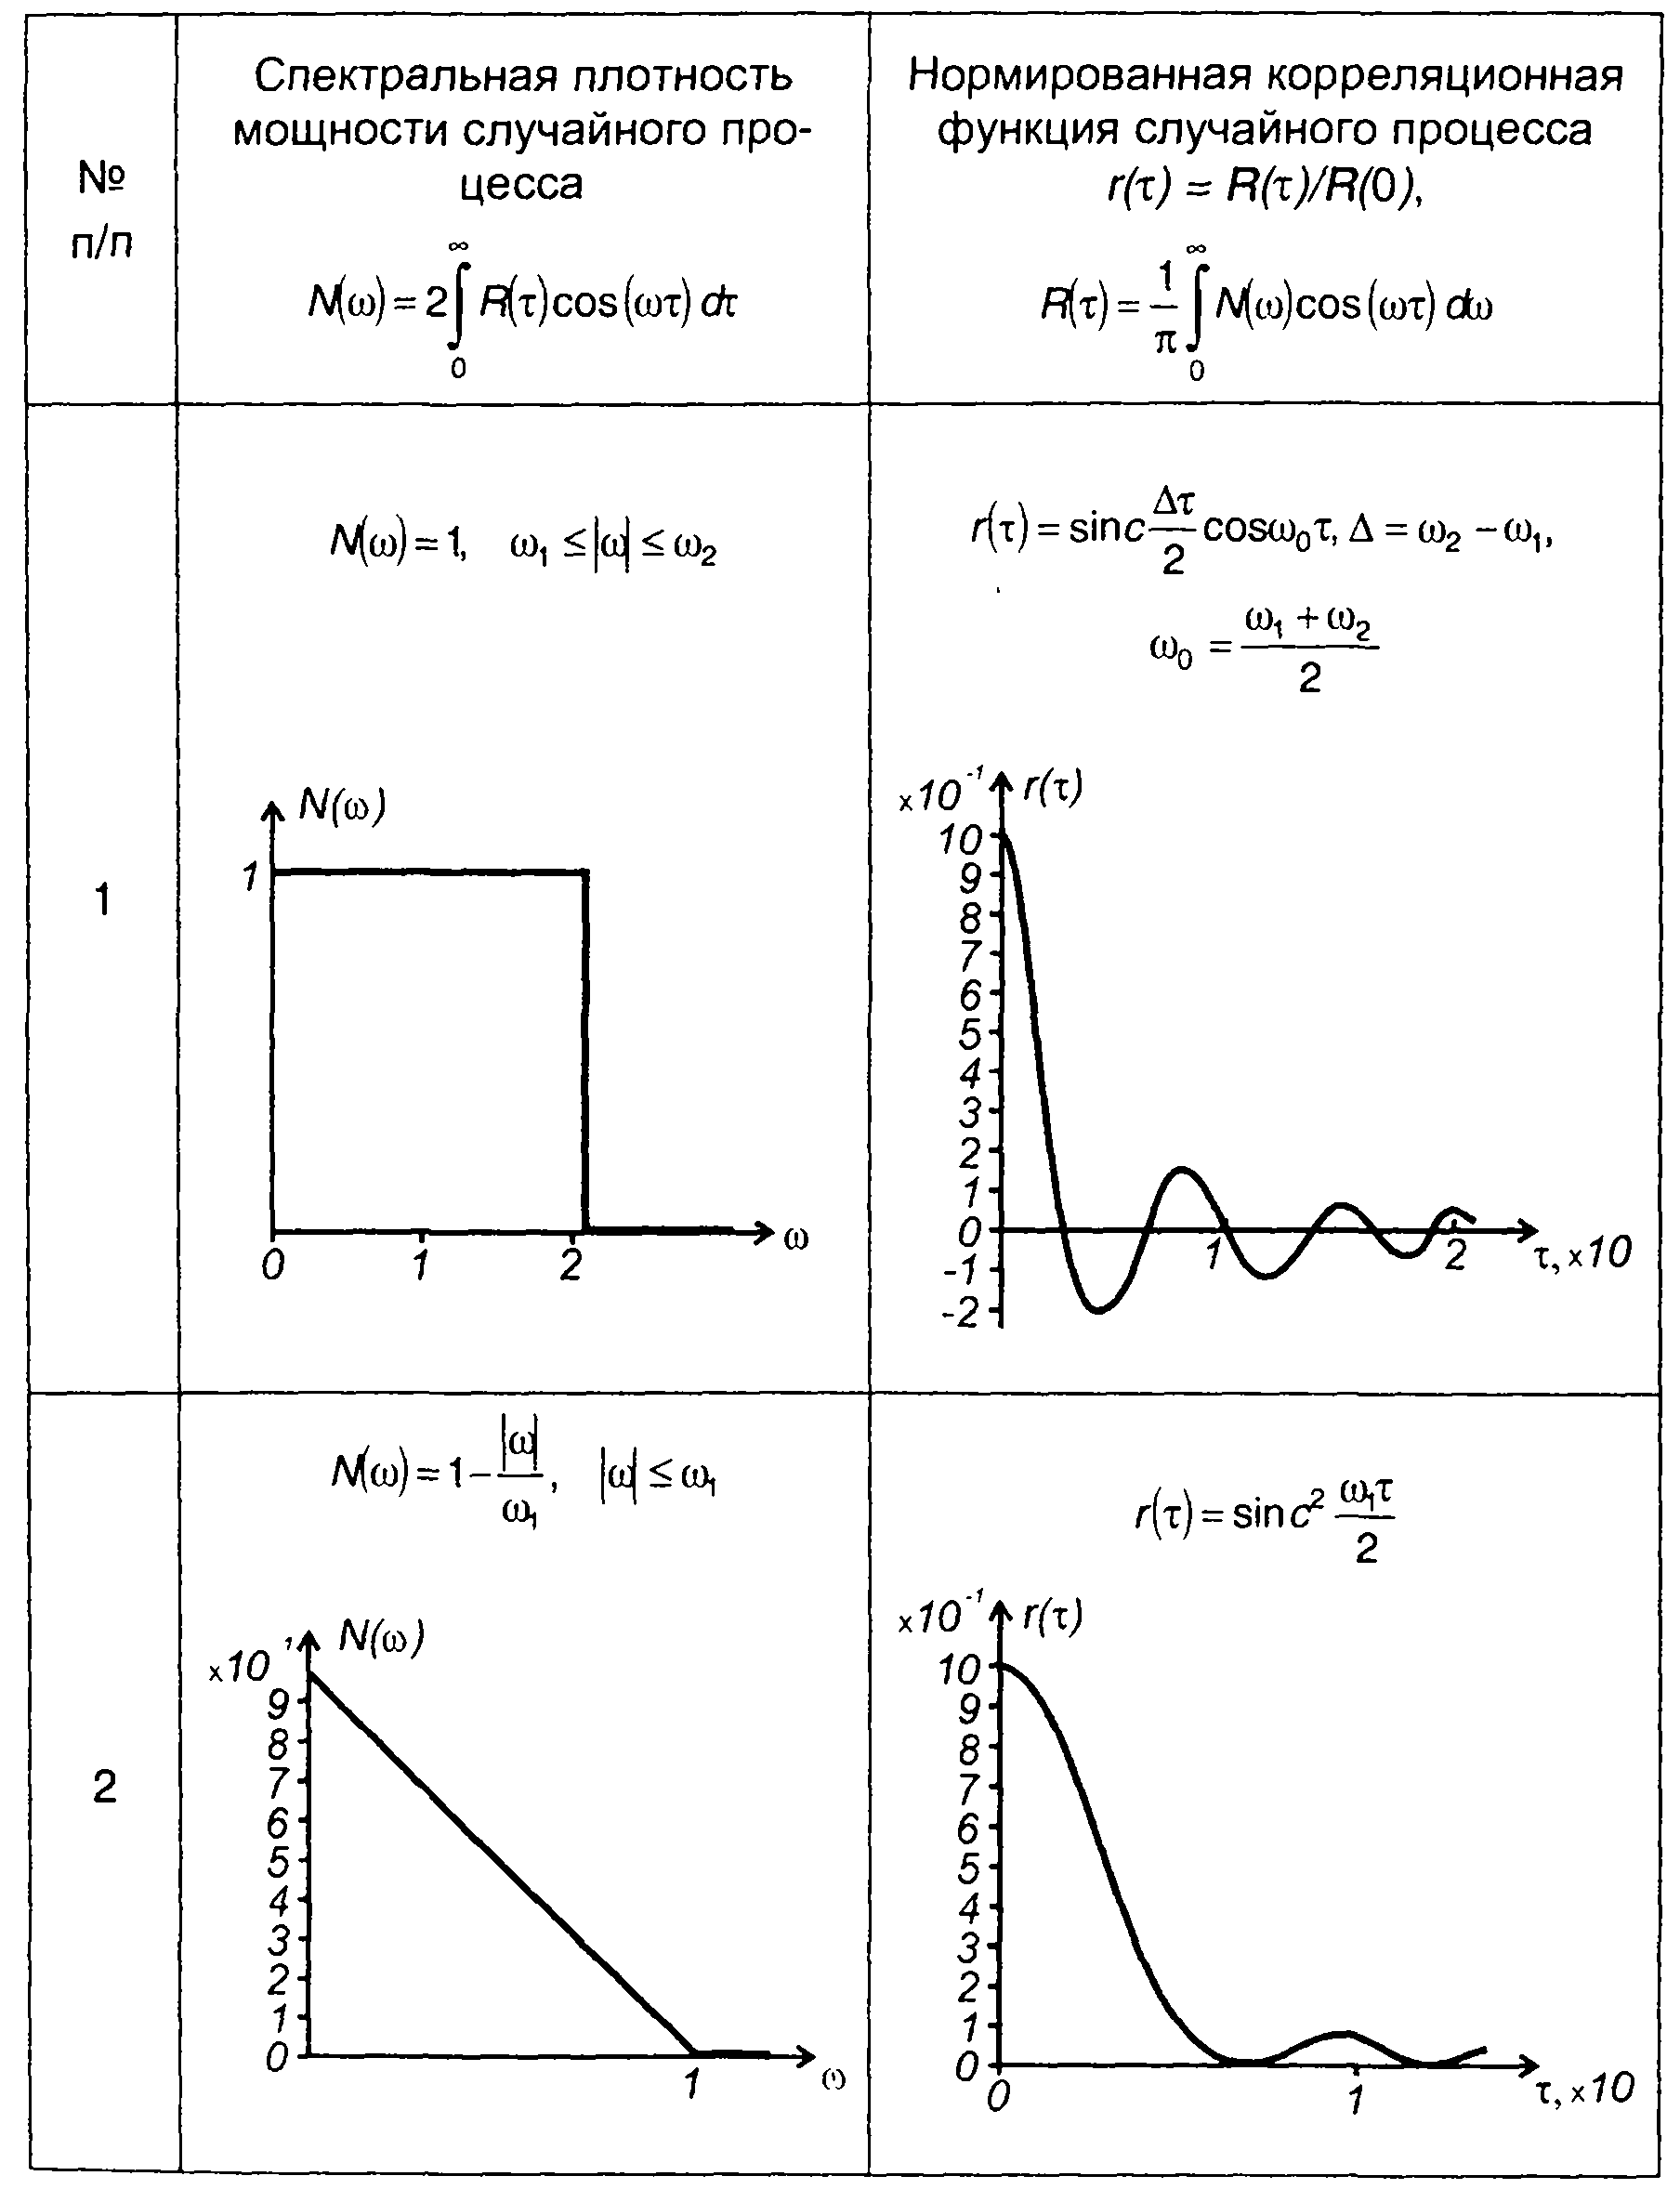 Спектральная плотность мощности при ШСВ